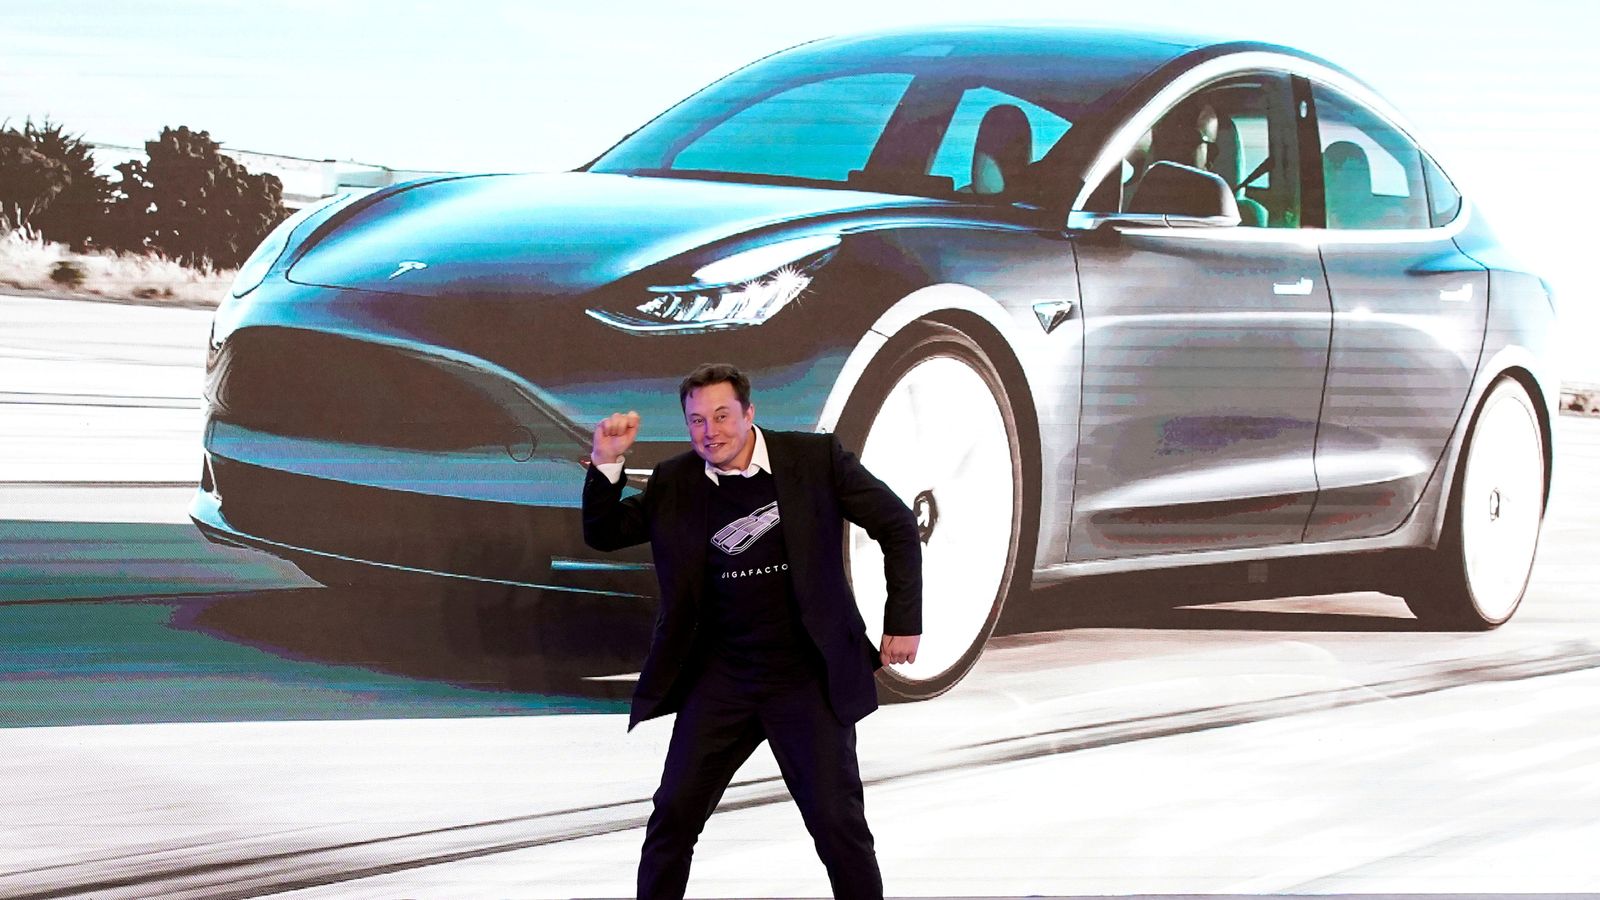 Saham Tesla jatuh setelah rencana Elon Musk untuk melepas 10% sahamnya didukung oleh pengguna Twitter |  Berita bisnis